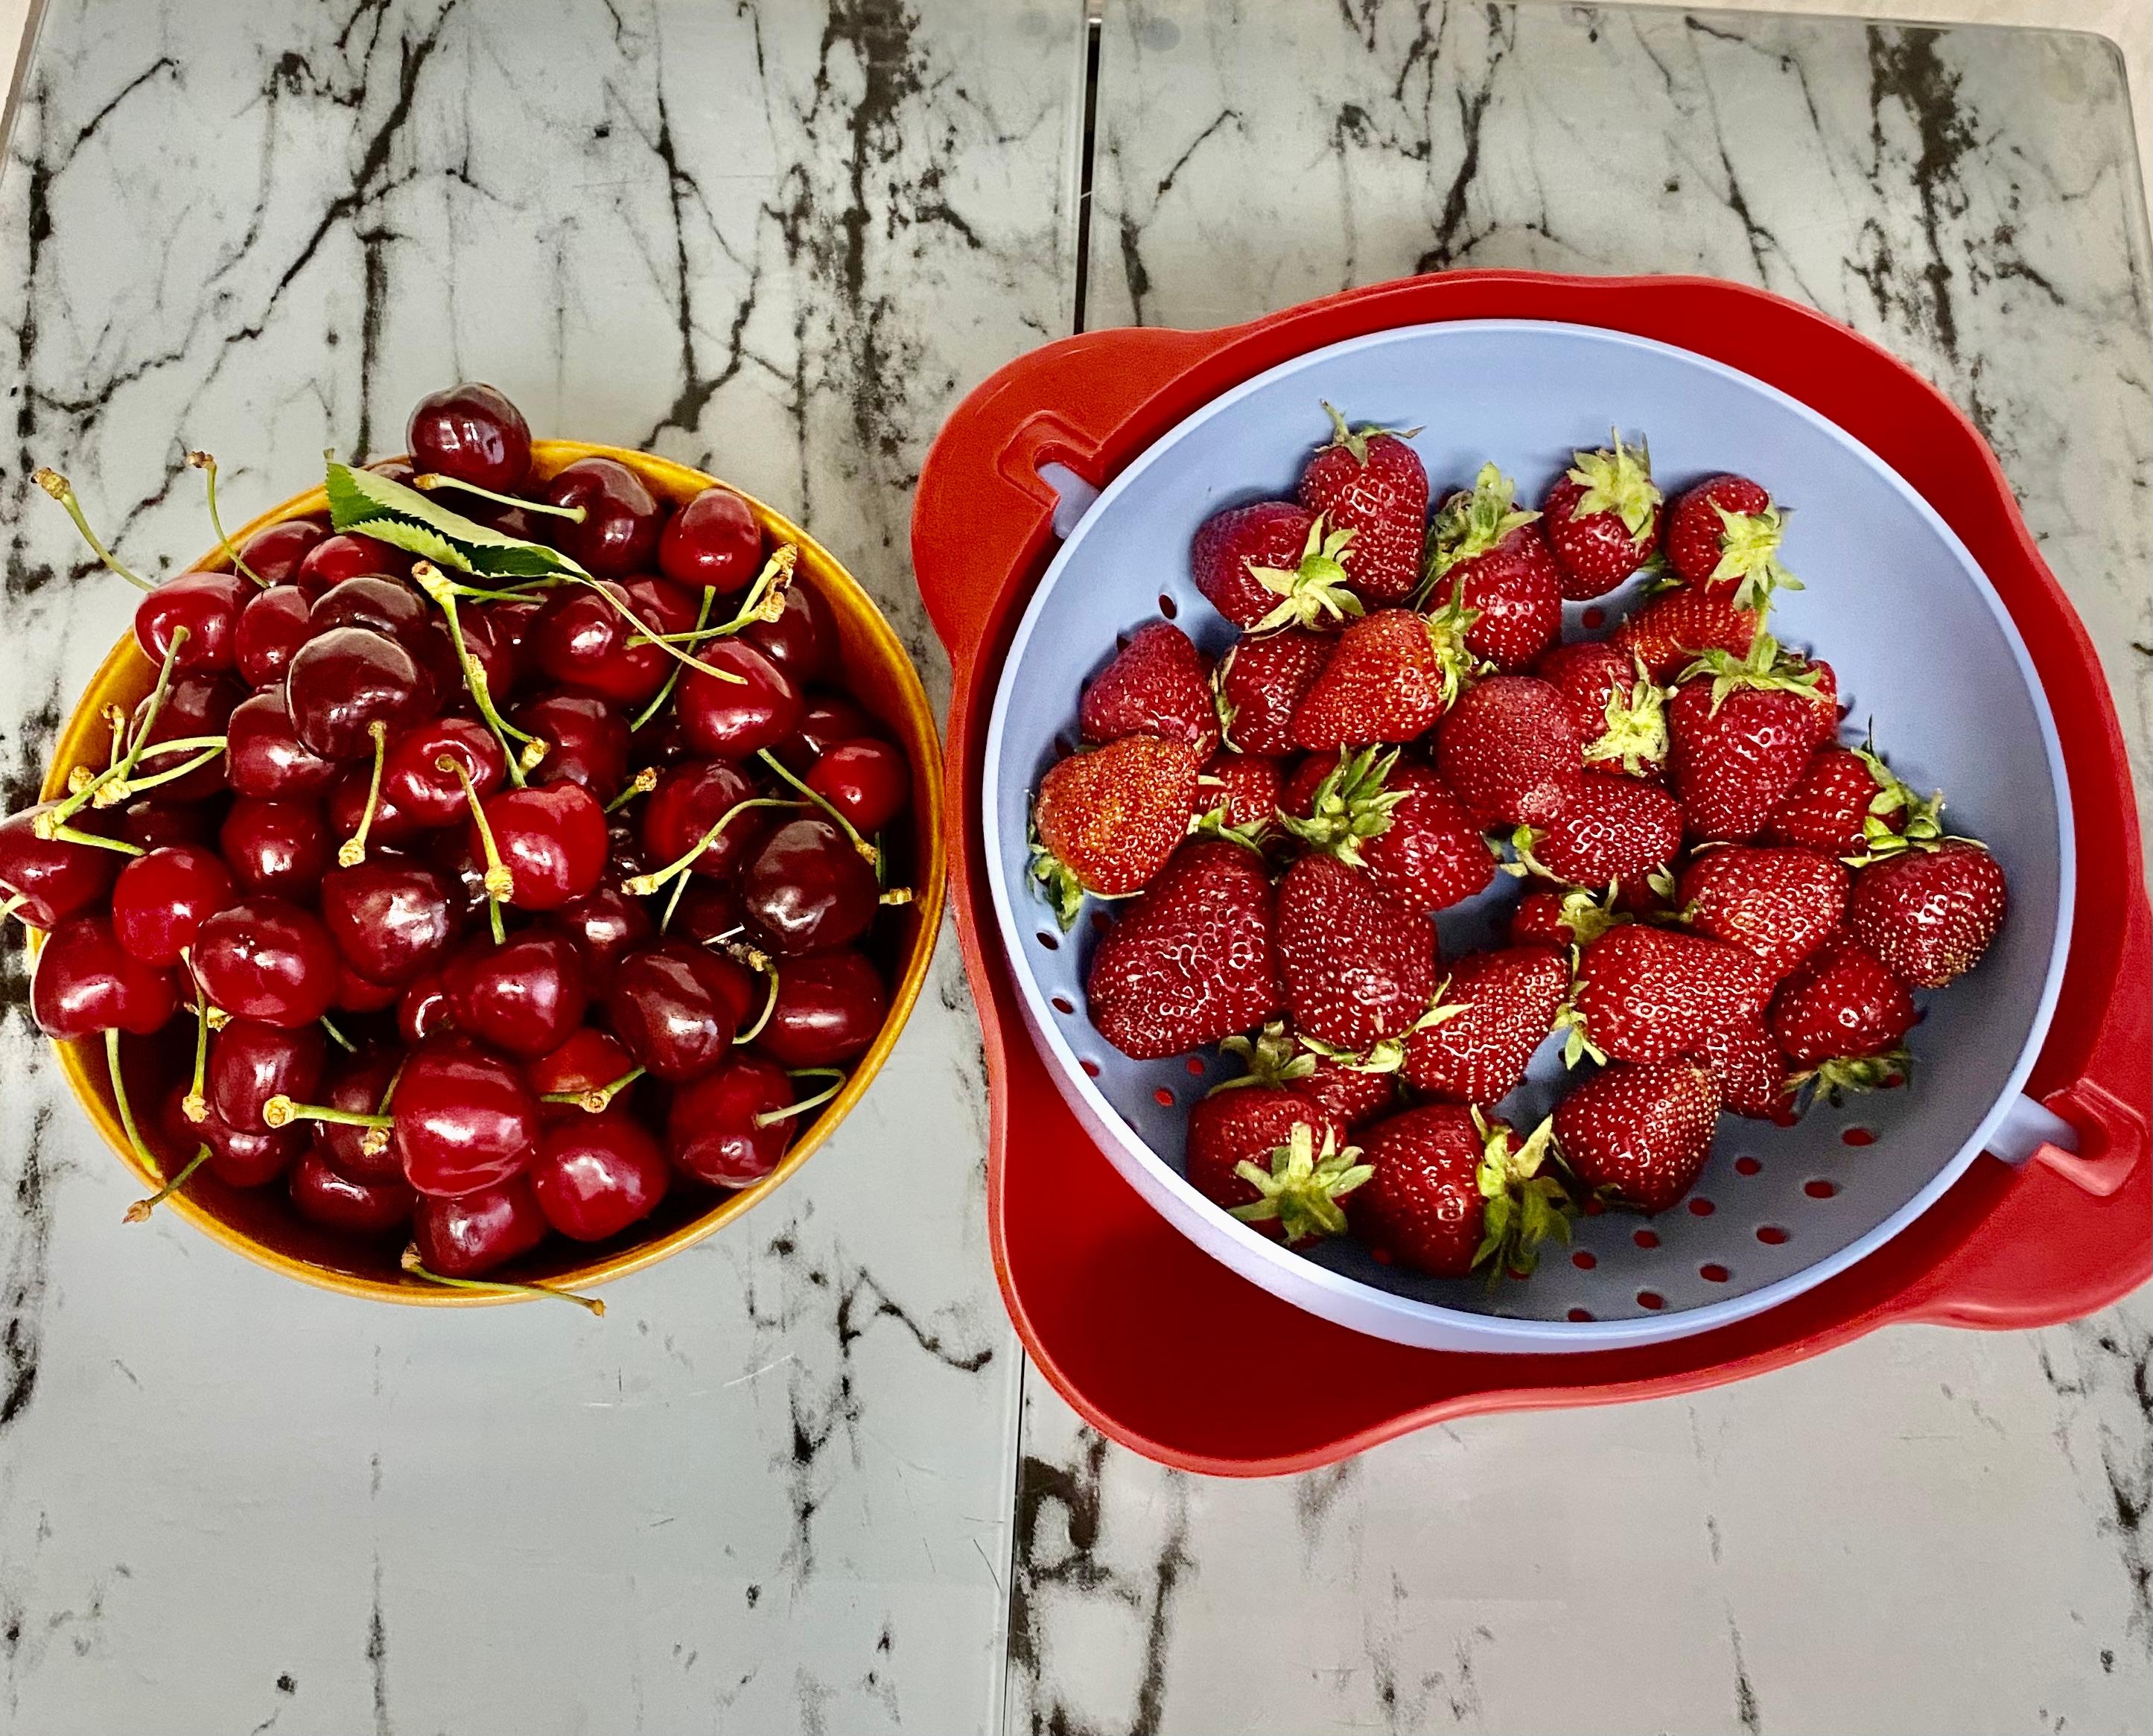 Wir lieben diese Jahreszeit 😋
#obst #erdbeeren #kirschen #garten